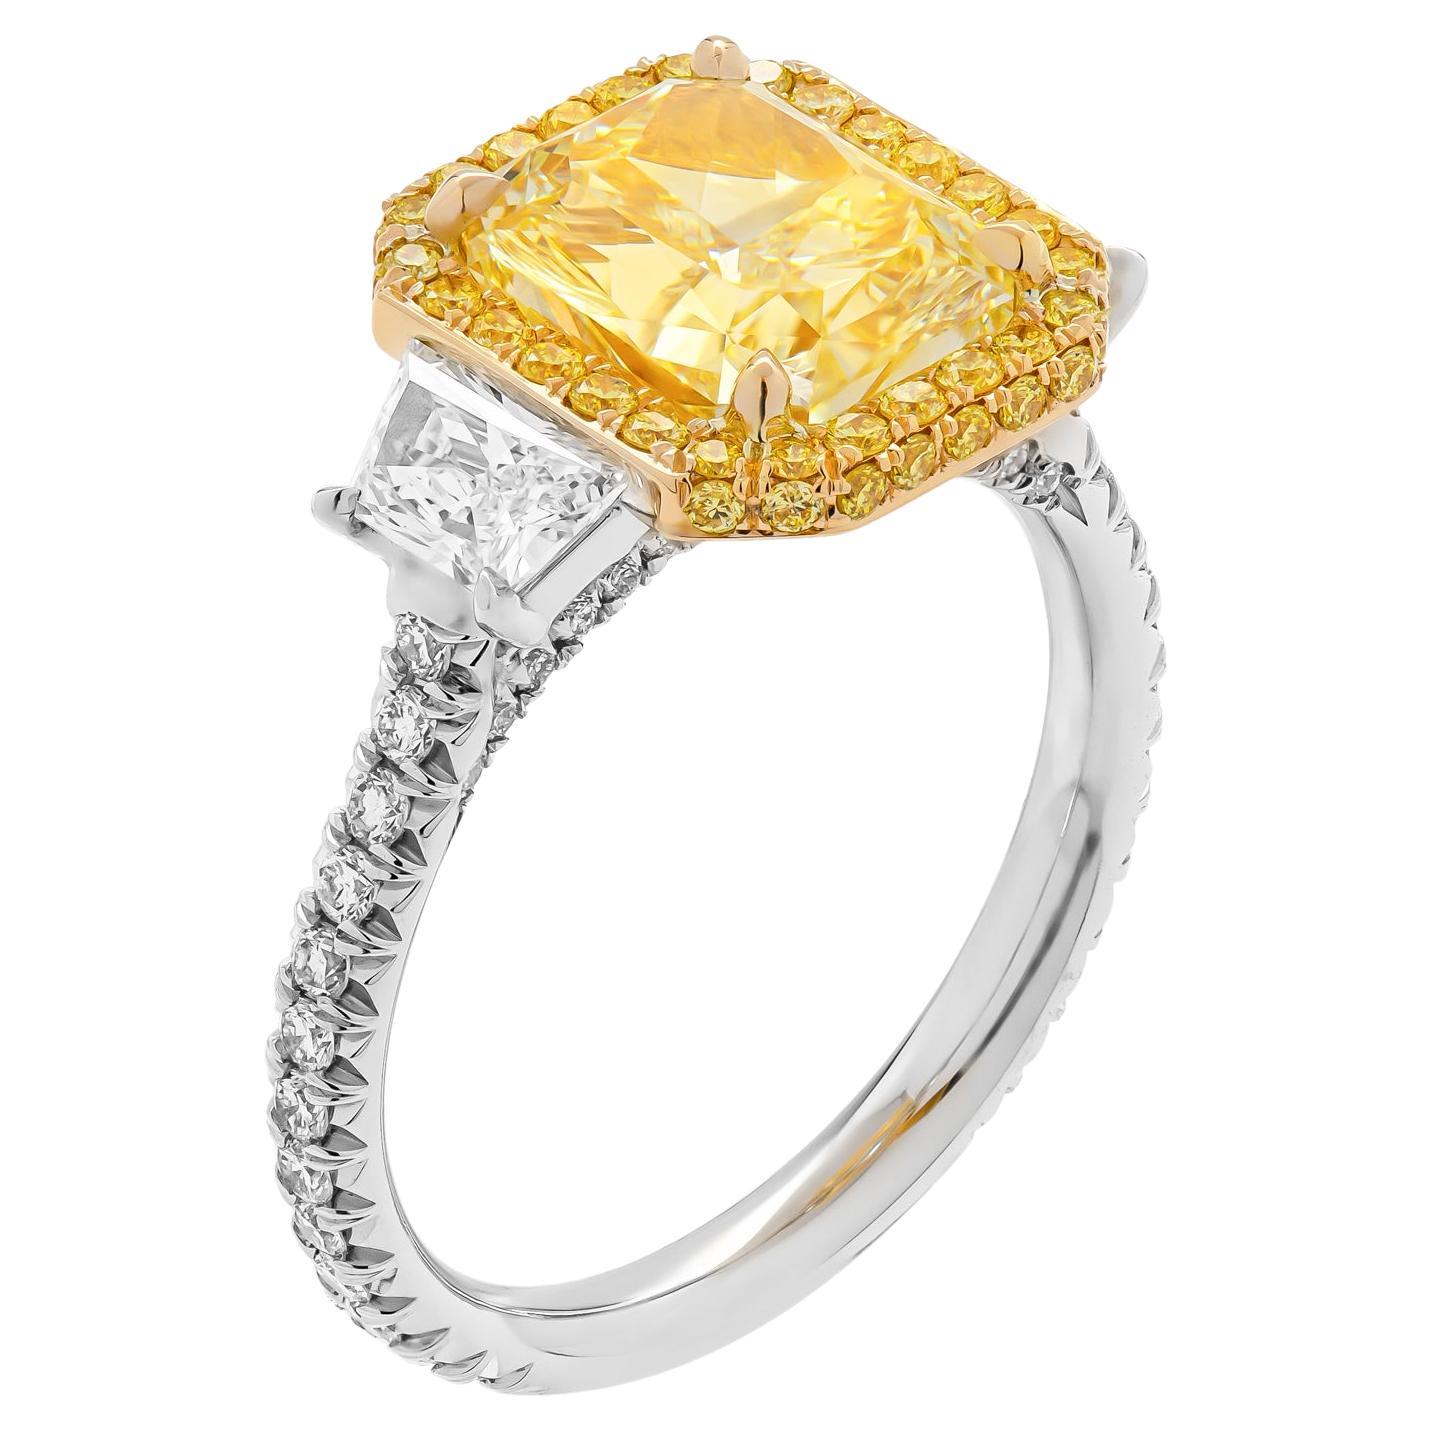 Bague à 3 pierres de couleur jaune clair fantaisie VS2 radiant de 3,04 carats, certifiée GIA